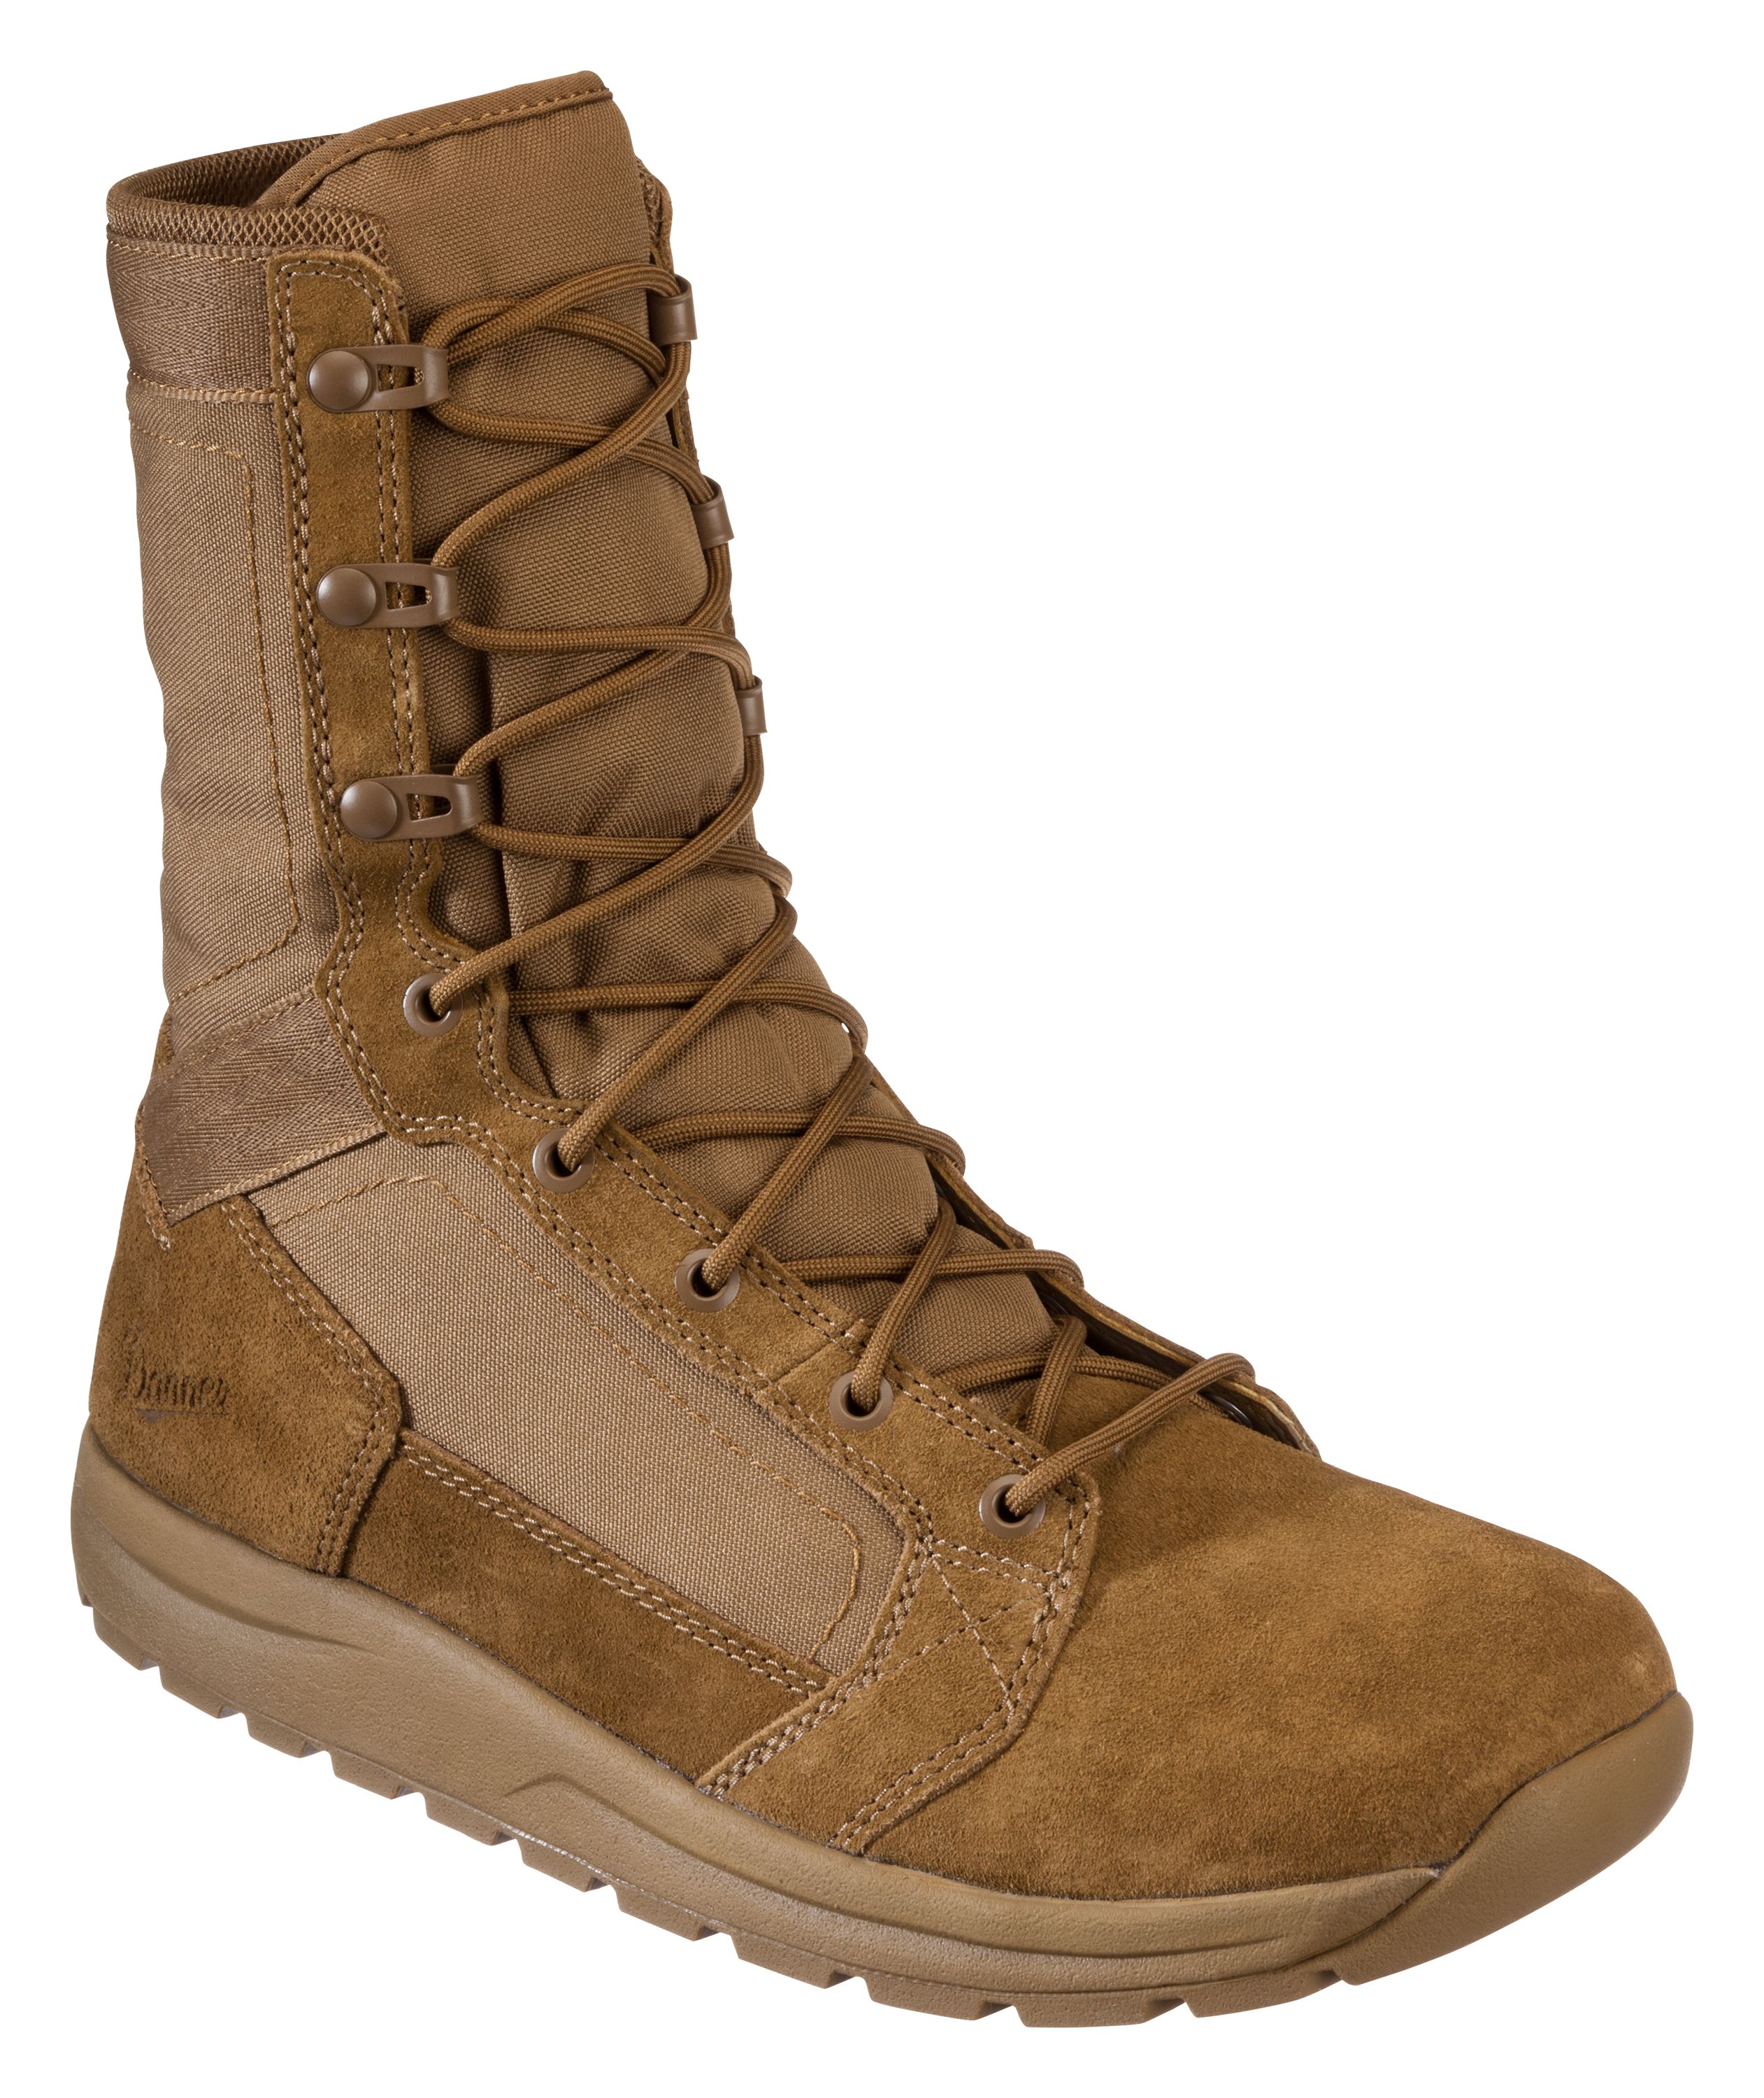 Danner Tachyon Tactical Boots for Men - Coyote - 11M